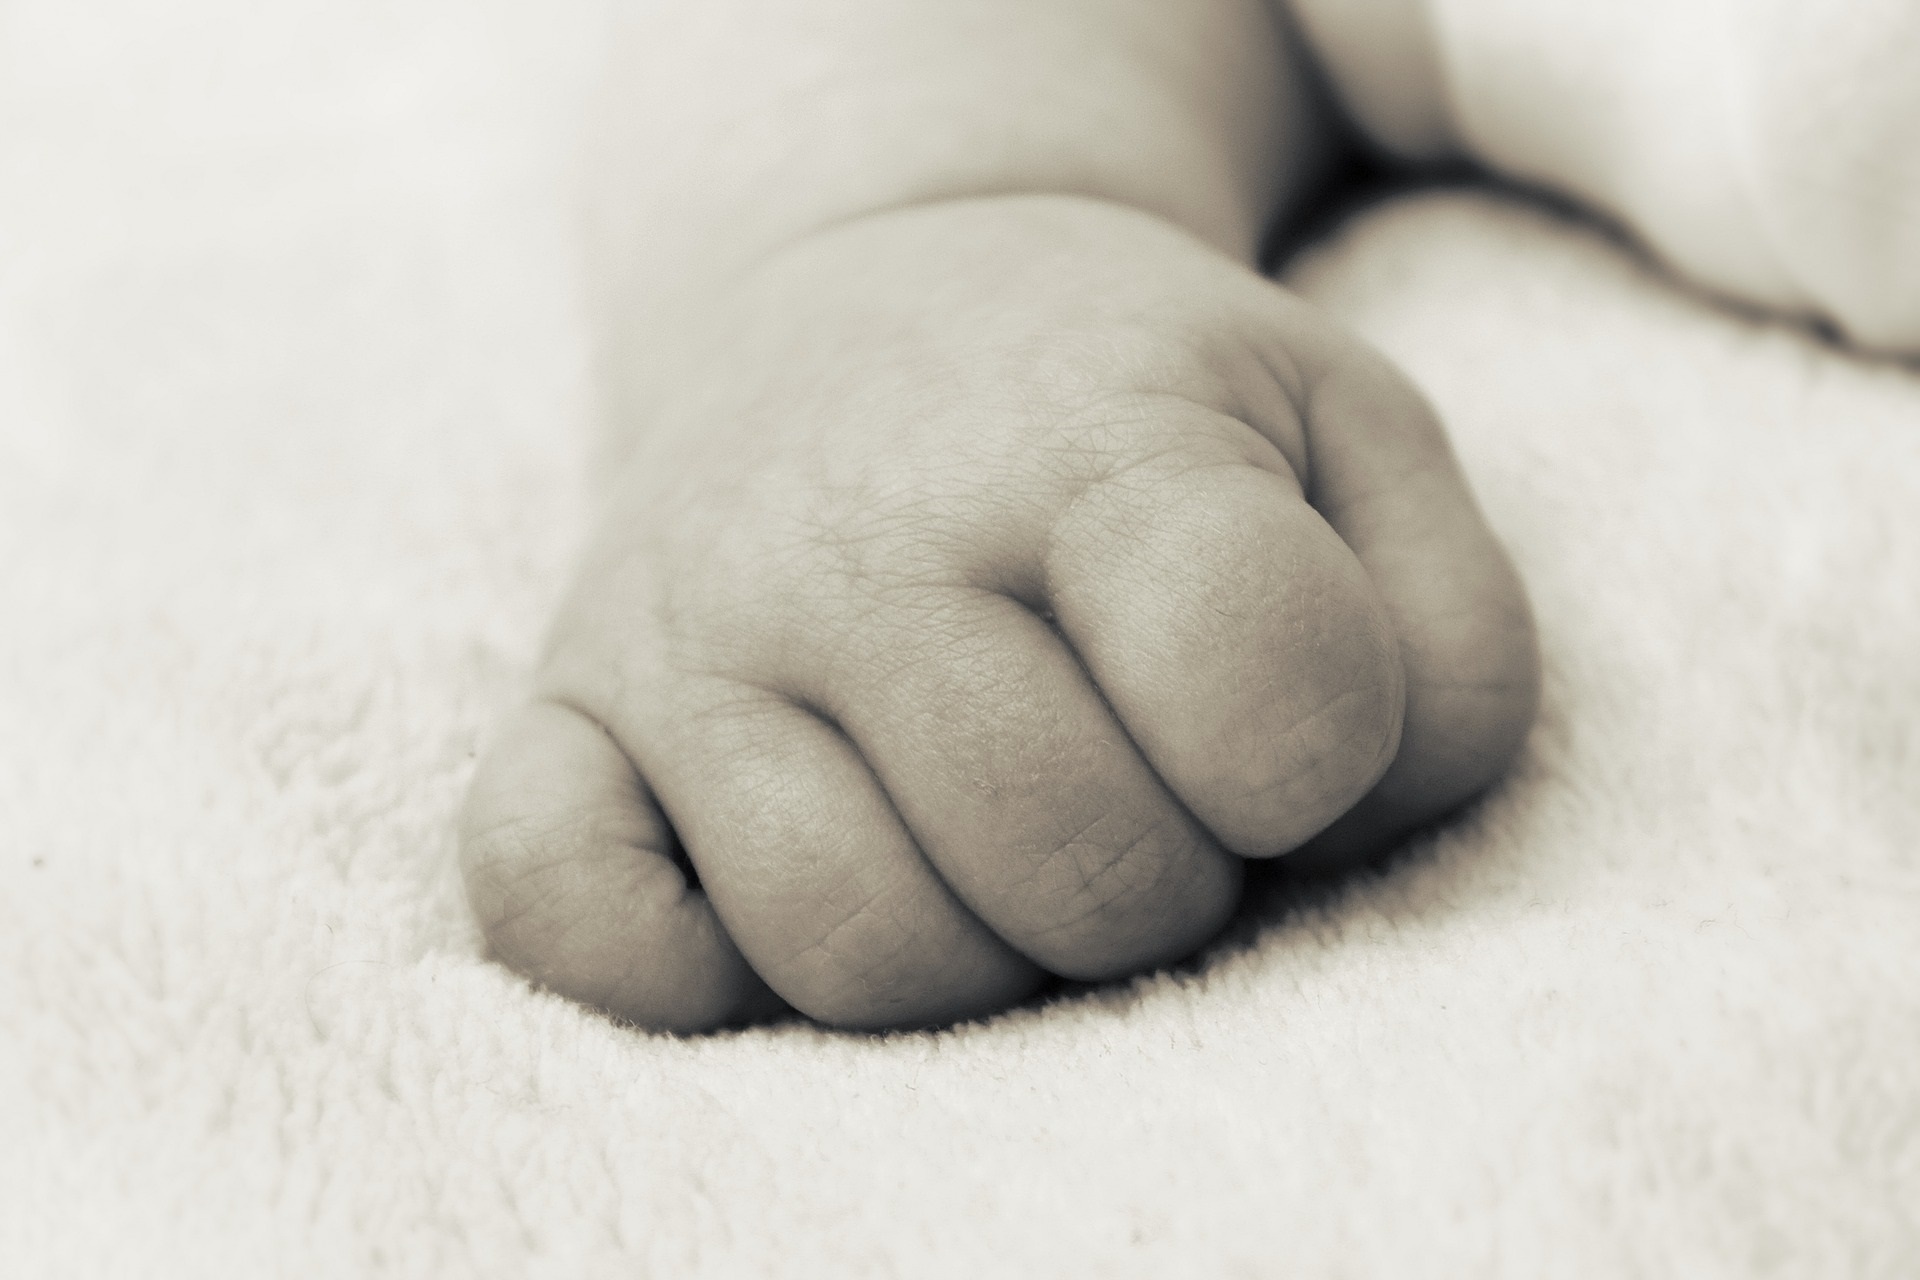 Según los especialistas, los bebés deben dormir en la misma habitación con sus padres durante al menos seis meses, pero en una superficie separada, firme y plana